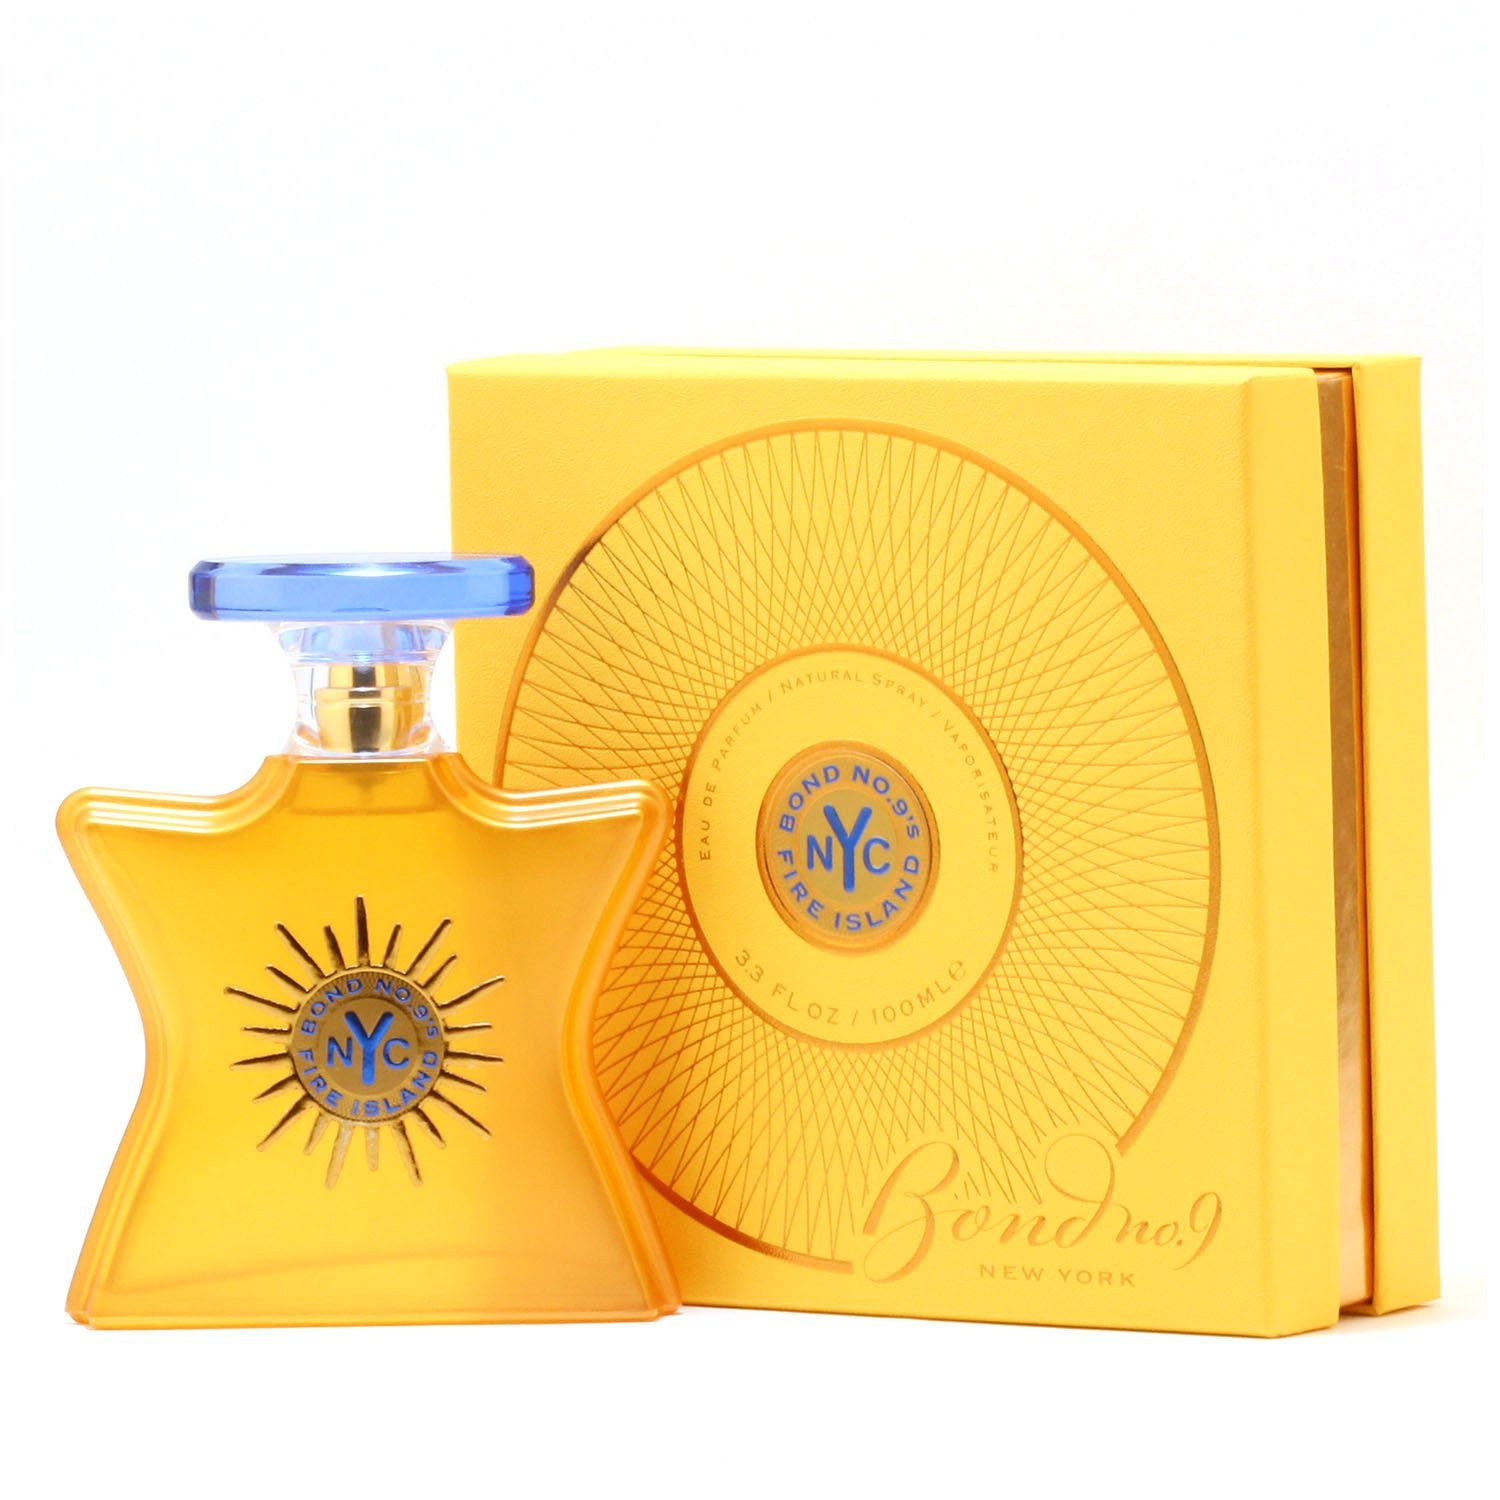 Perfume - BOND NO 9 FIRE ISLAND UNISEX  - EAU DE PARFUM SPRAY, 3.4 OZ